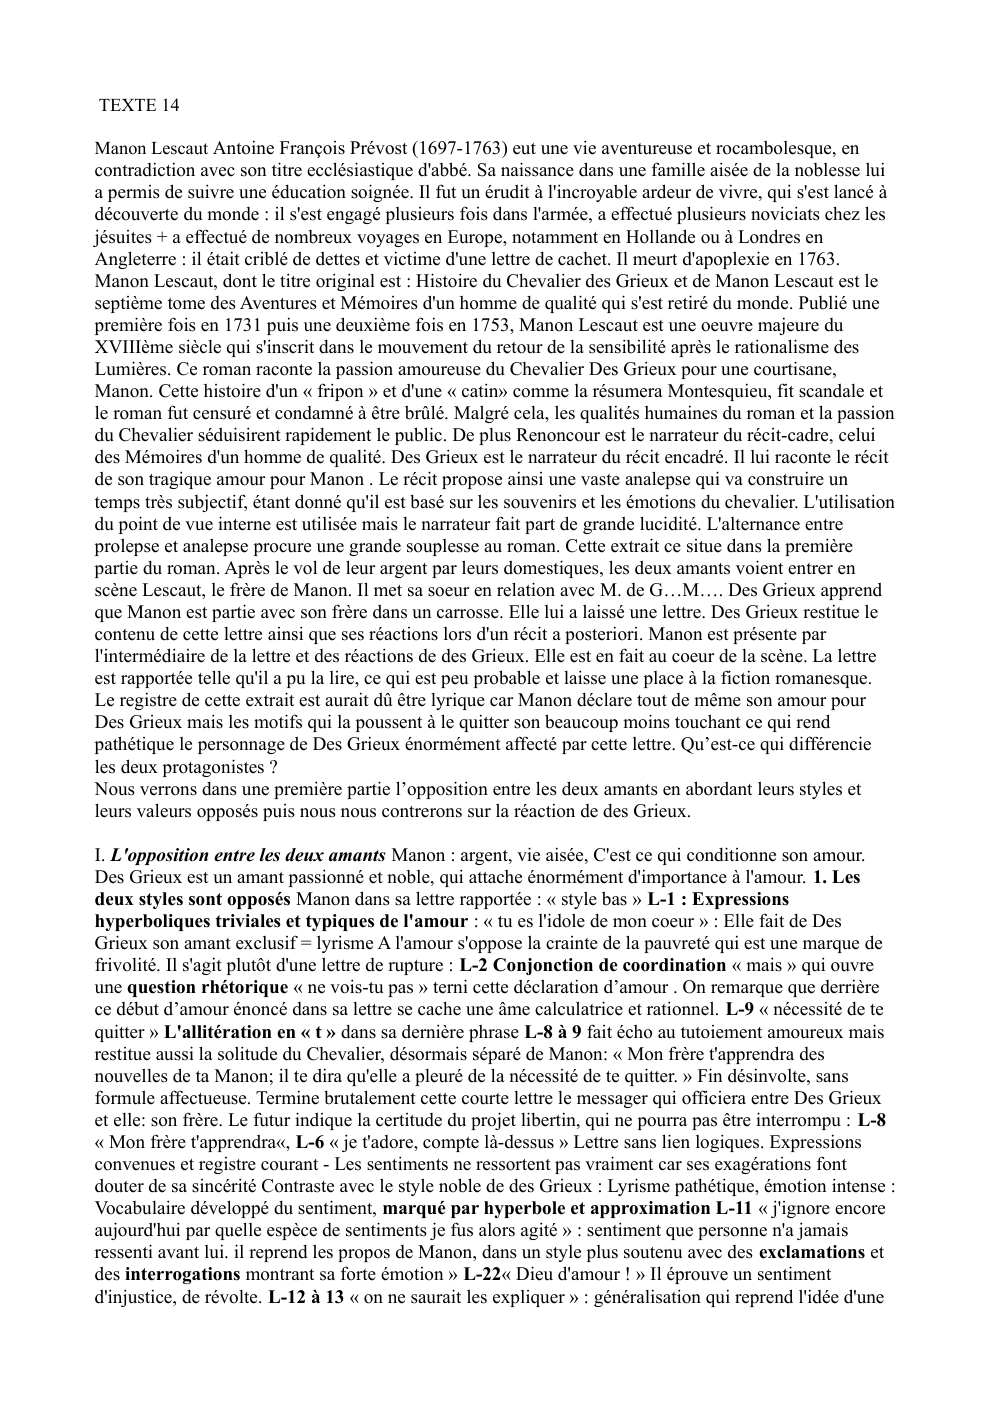 Prévisualisation du document Manon Lescaut Antoine François Prévost: Histoire du Chevalier des Grieux et de Manon Lescaut